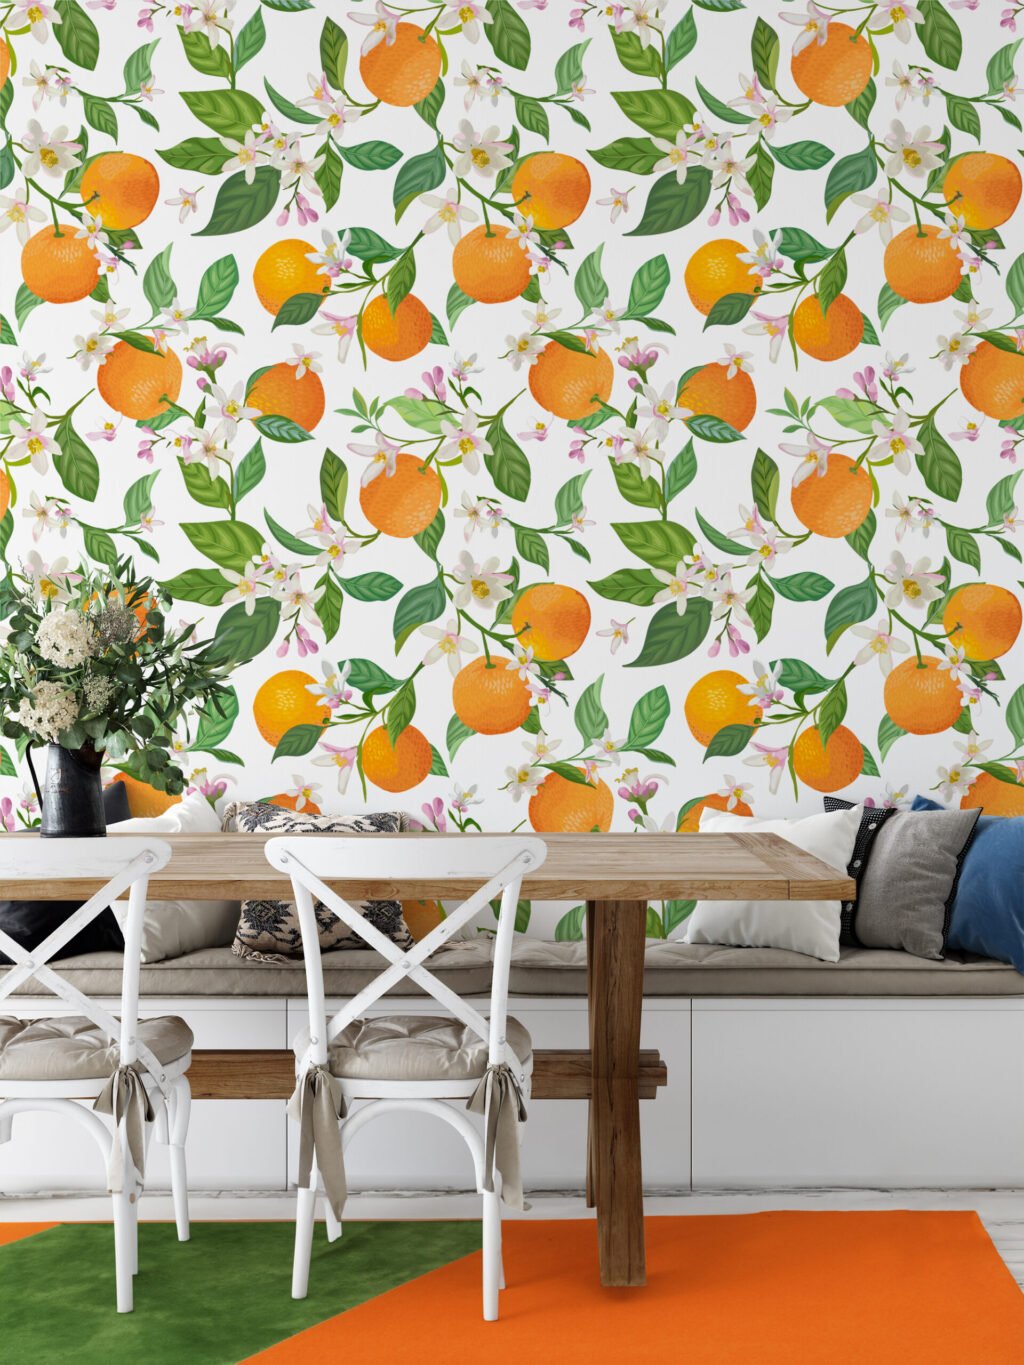 Portakal ve Çiçekler Duvar Kağıdı, Taze Portakallar ve Çiçekler Tasarımı Duvar Posteri Çiçekli Duvar Kağıtları 5